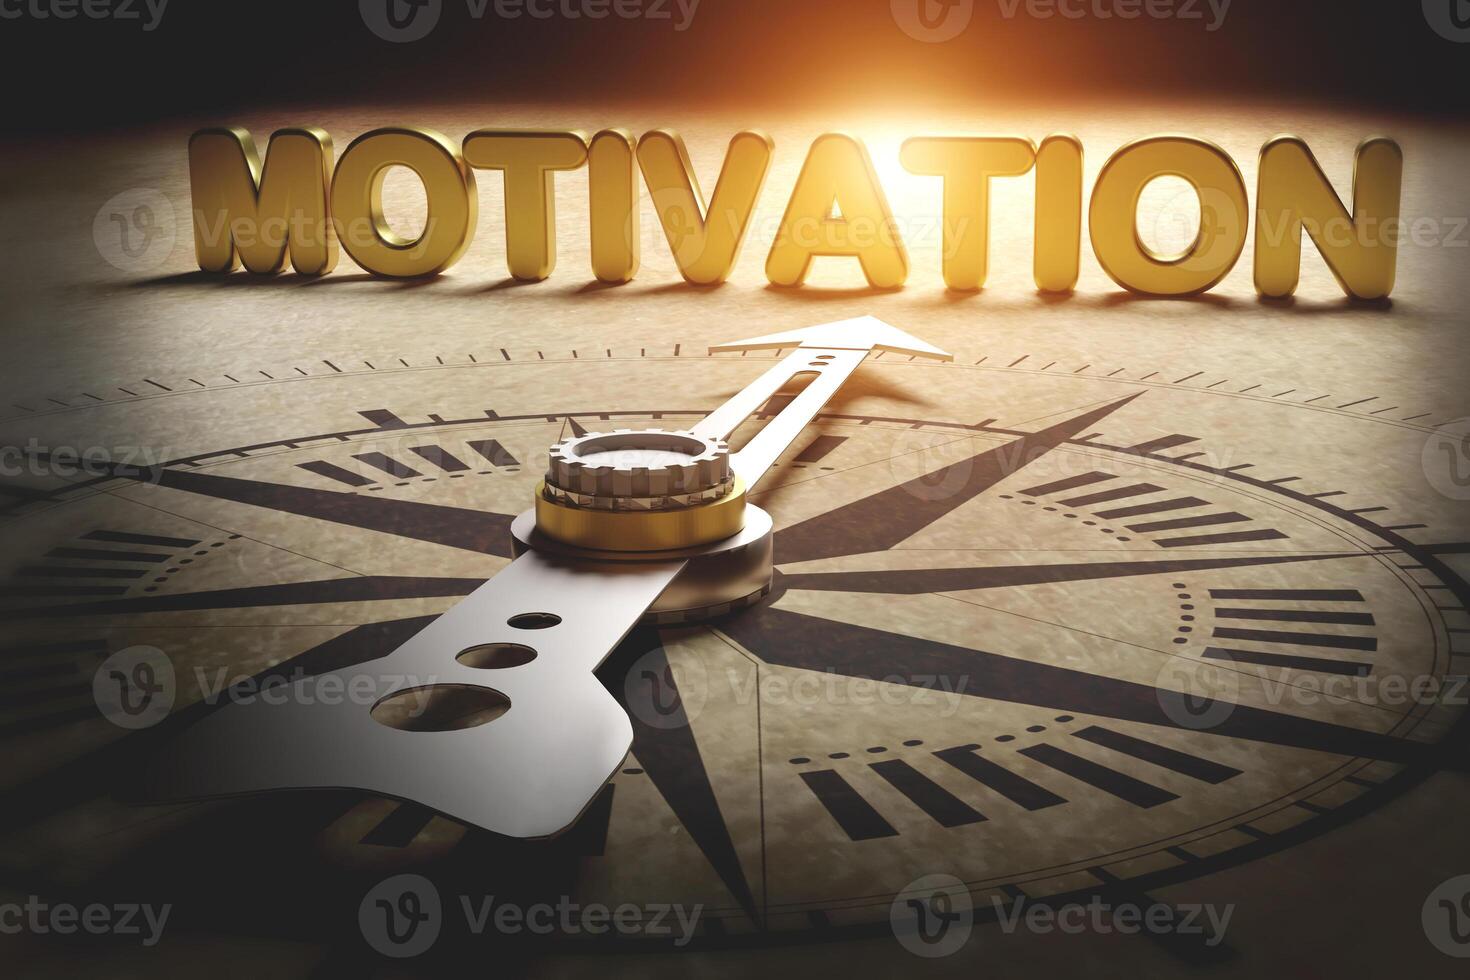 bussola punti per motivazione. concetto di scoperta motivazione e chiave per trasformando te stesso per successo. foto